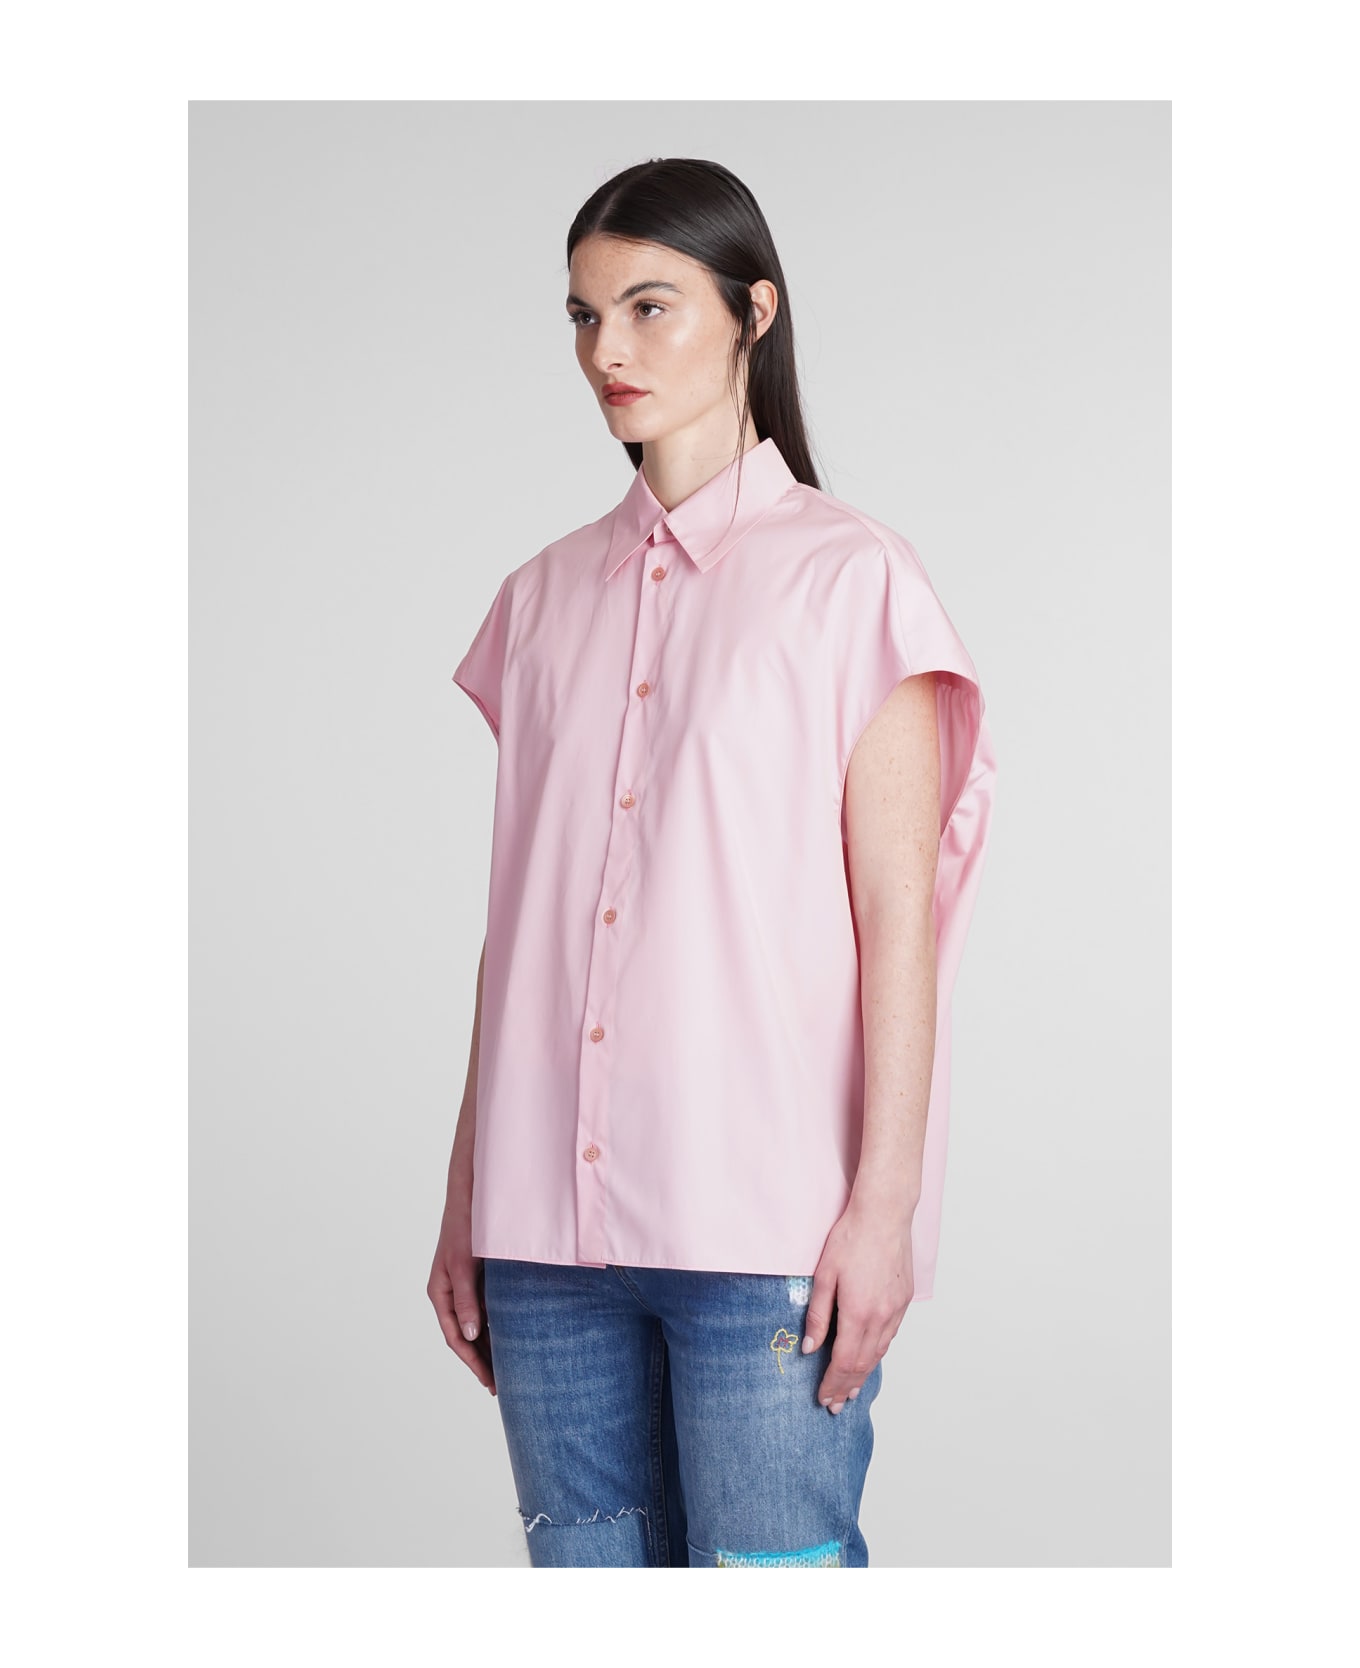 Marni Shirt In Rose-pink Cotton - rose-pink